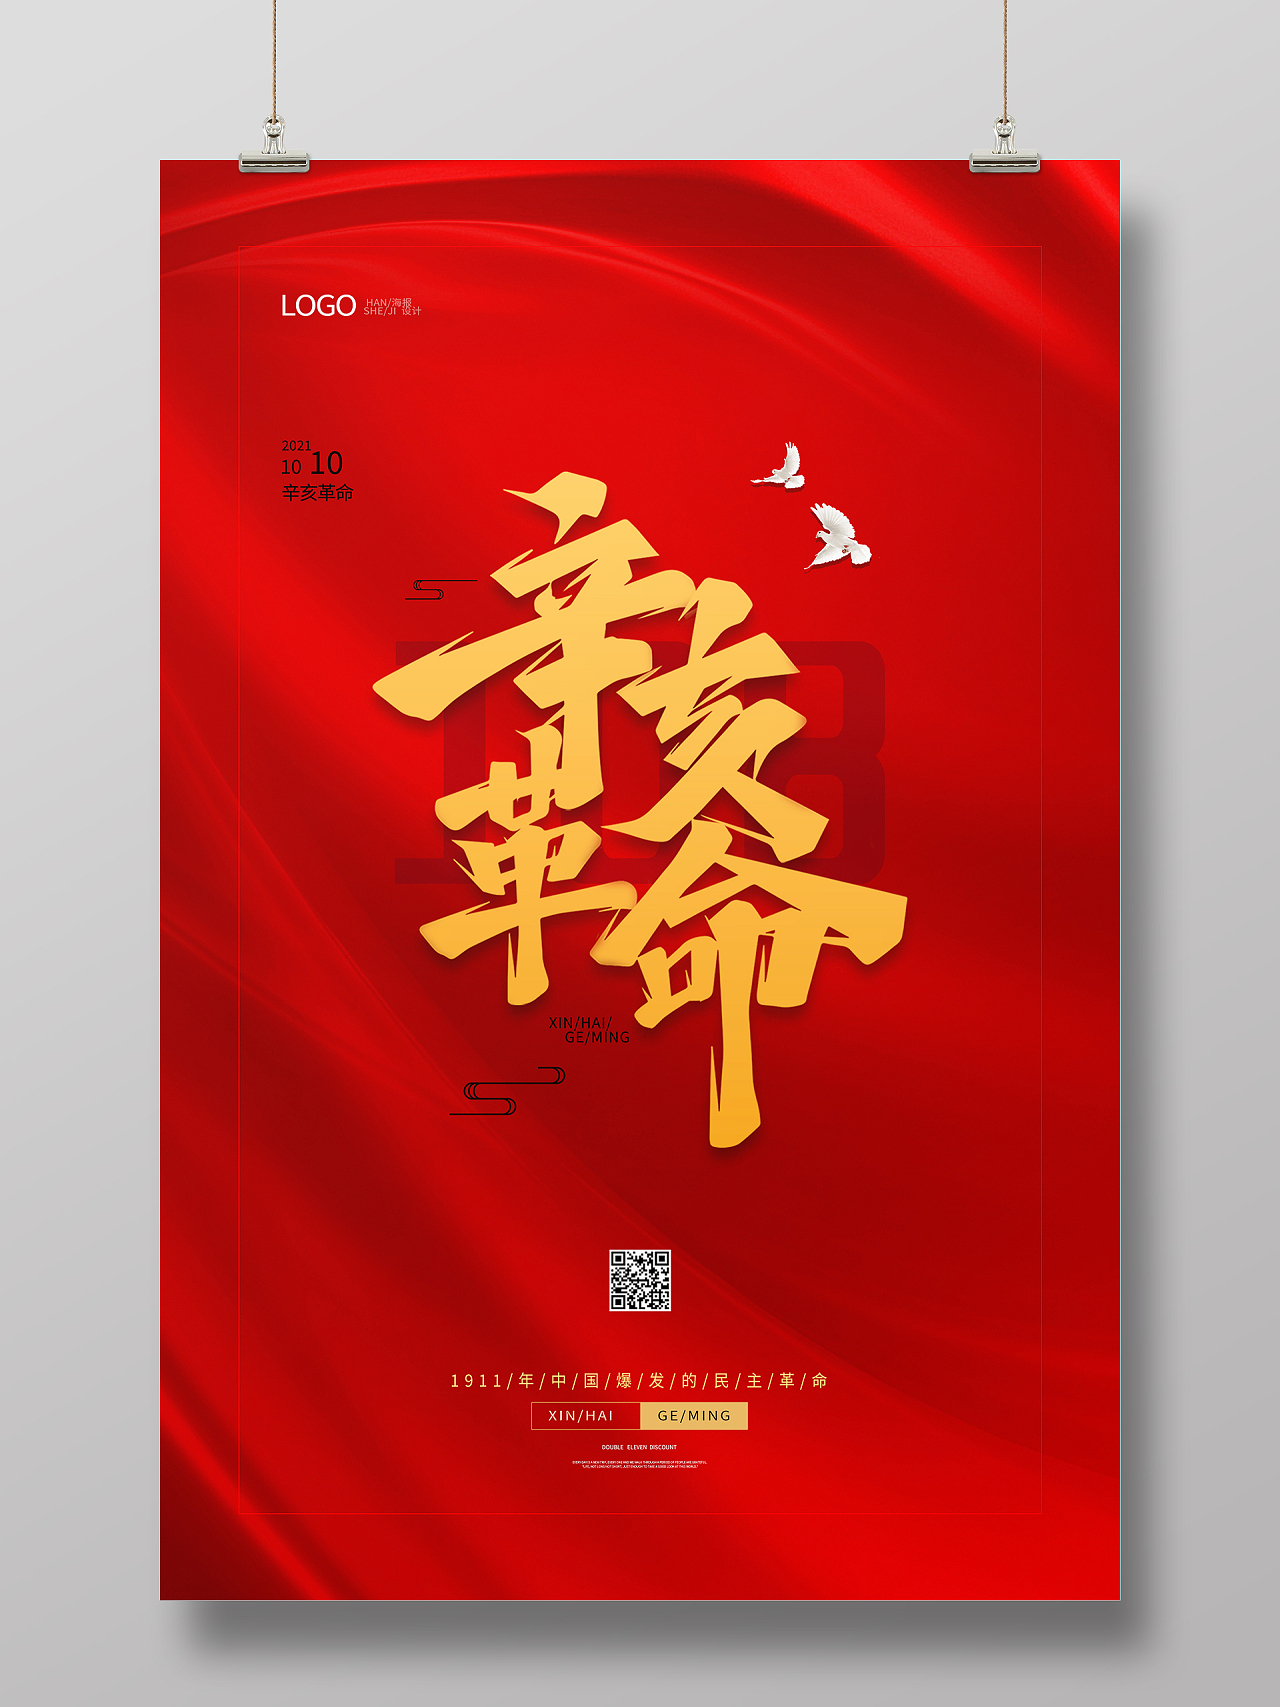 纯色红底红色背景红色大气辛亥革命纪念日海报设计